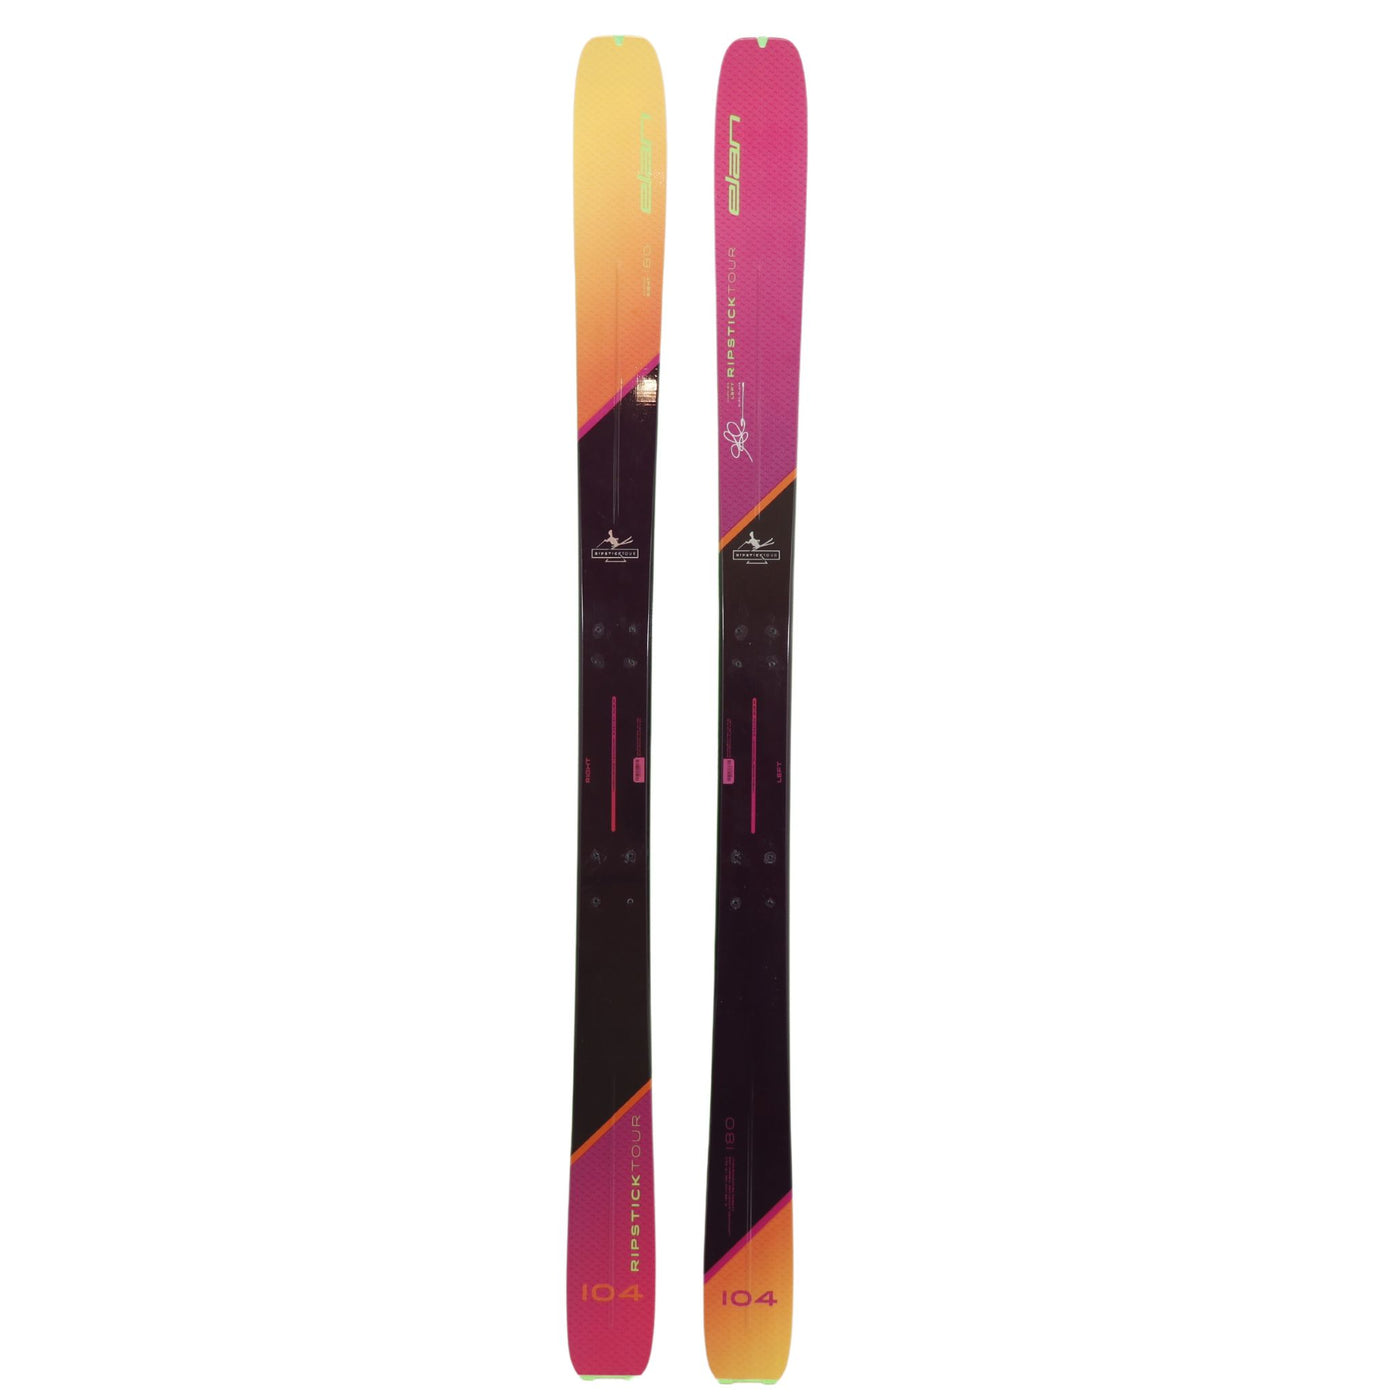 180cm Elan Glen Plake Ripstick Tour 104 Freeride Touring Skis | NEW- Mounted Once SKIS Elan 180cm  